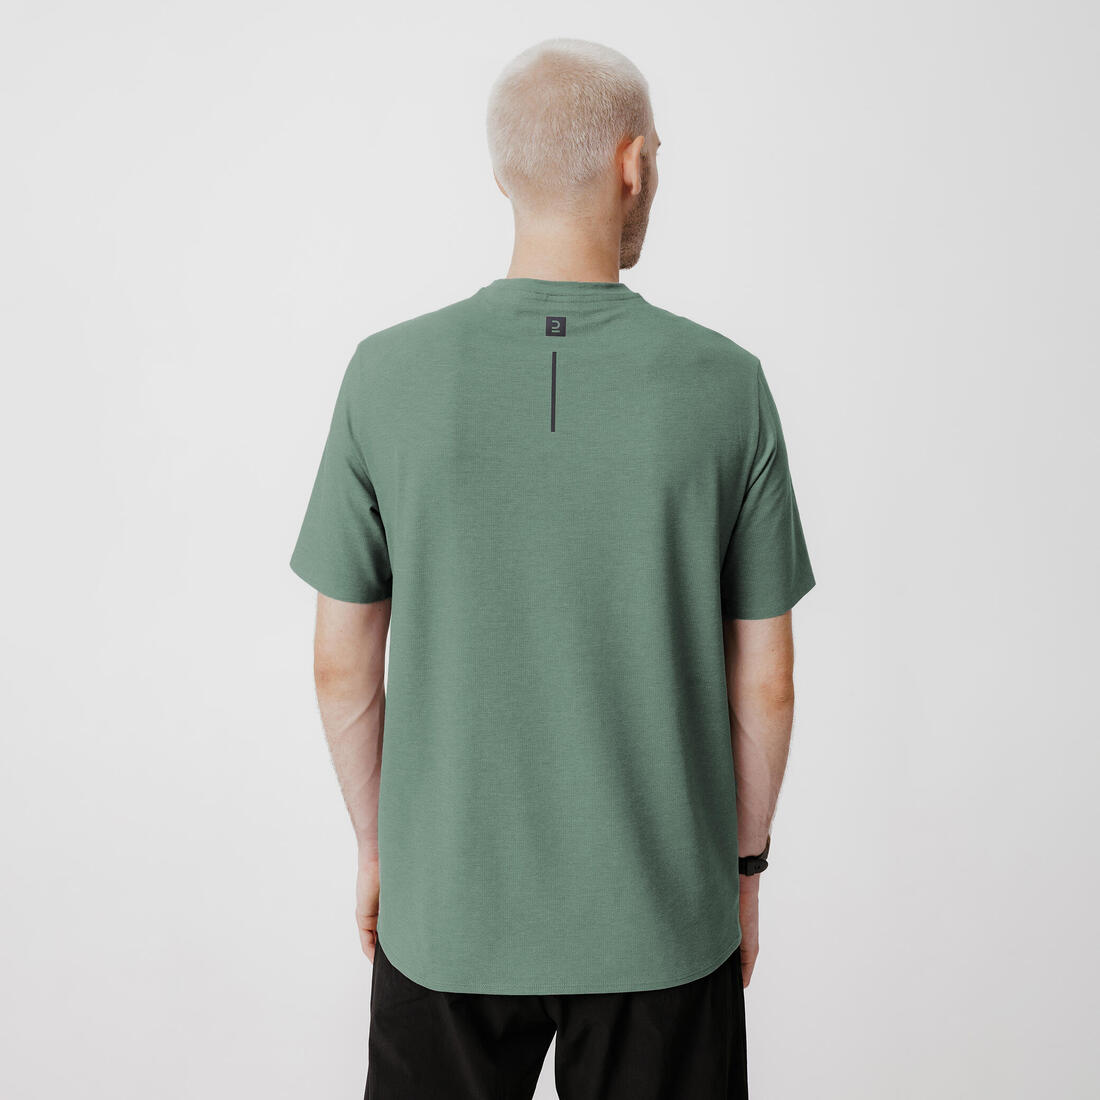 KALENJI(カレンジ) ランニング Tシャツ ソフト ブリーザブル メンズ